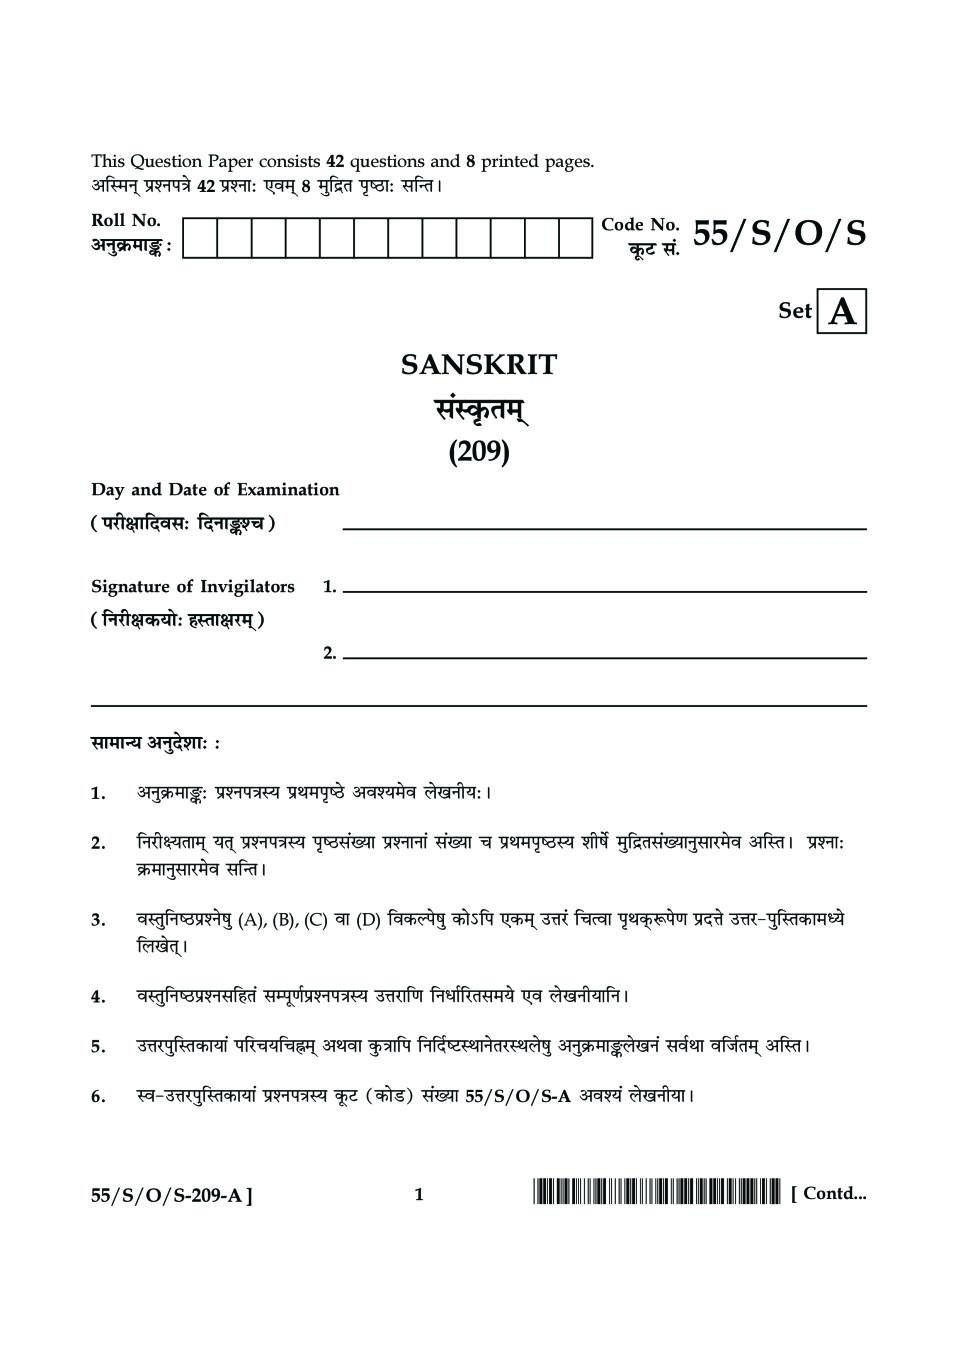 NIOS Class 10 Question Paper Oct 2017 - Sanskrit - Page 1